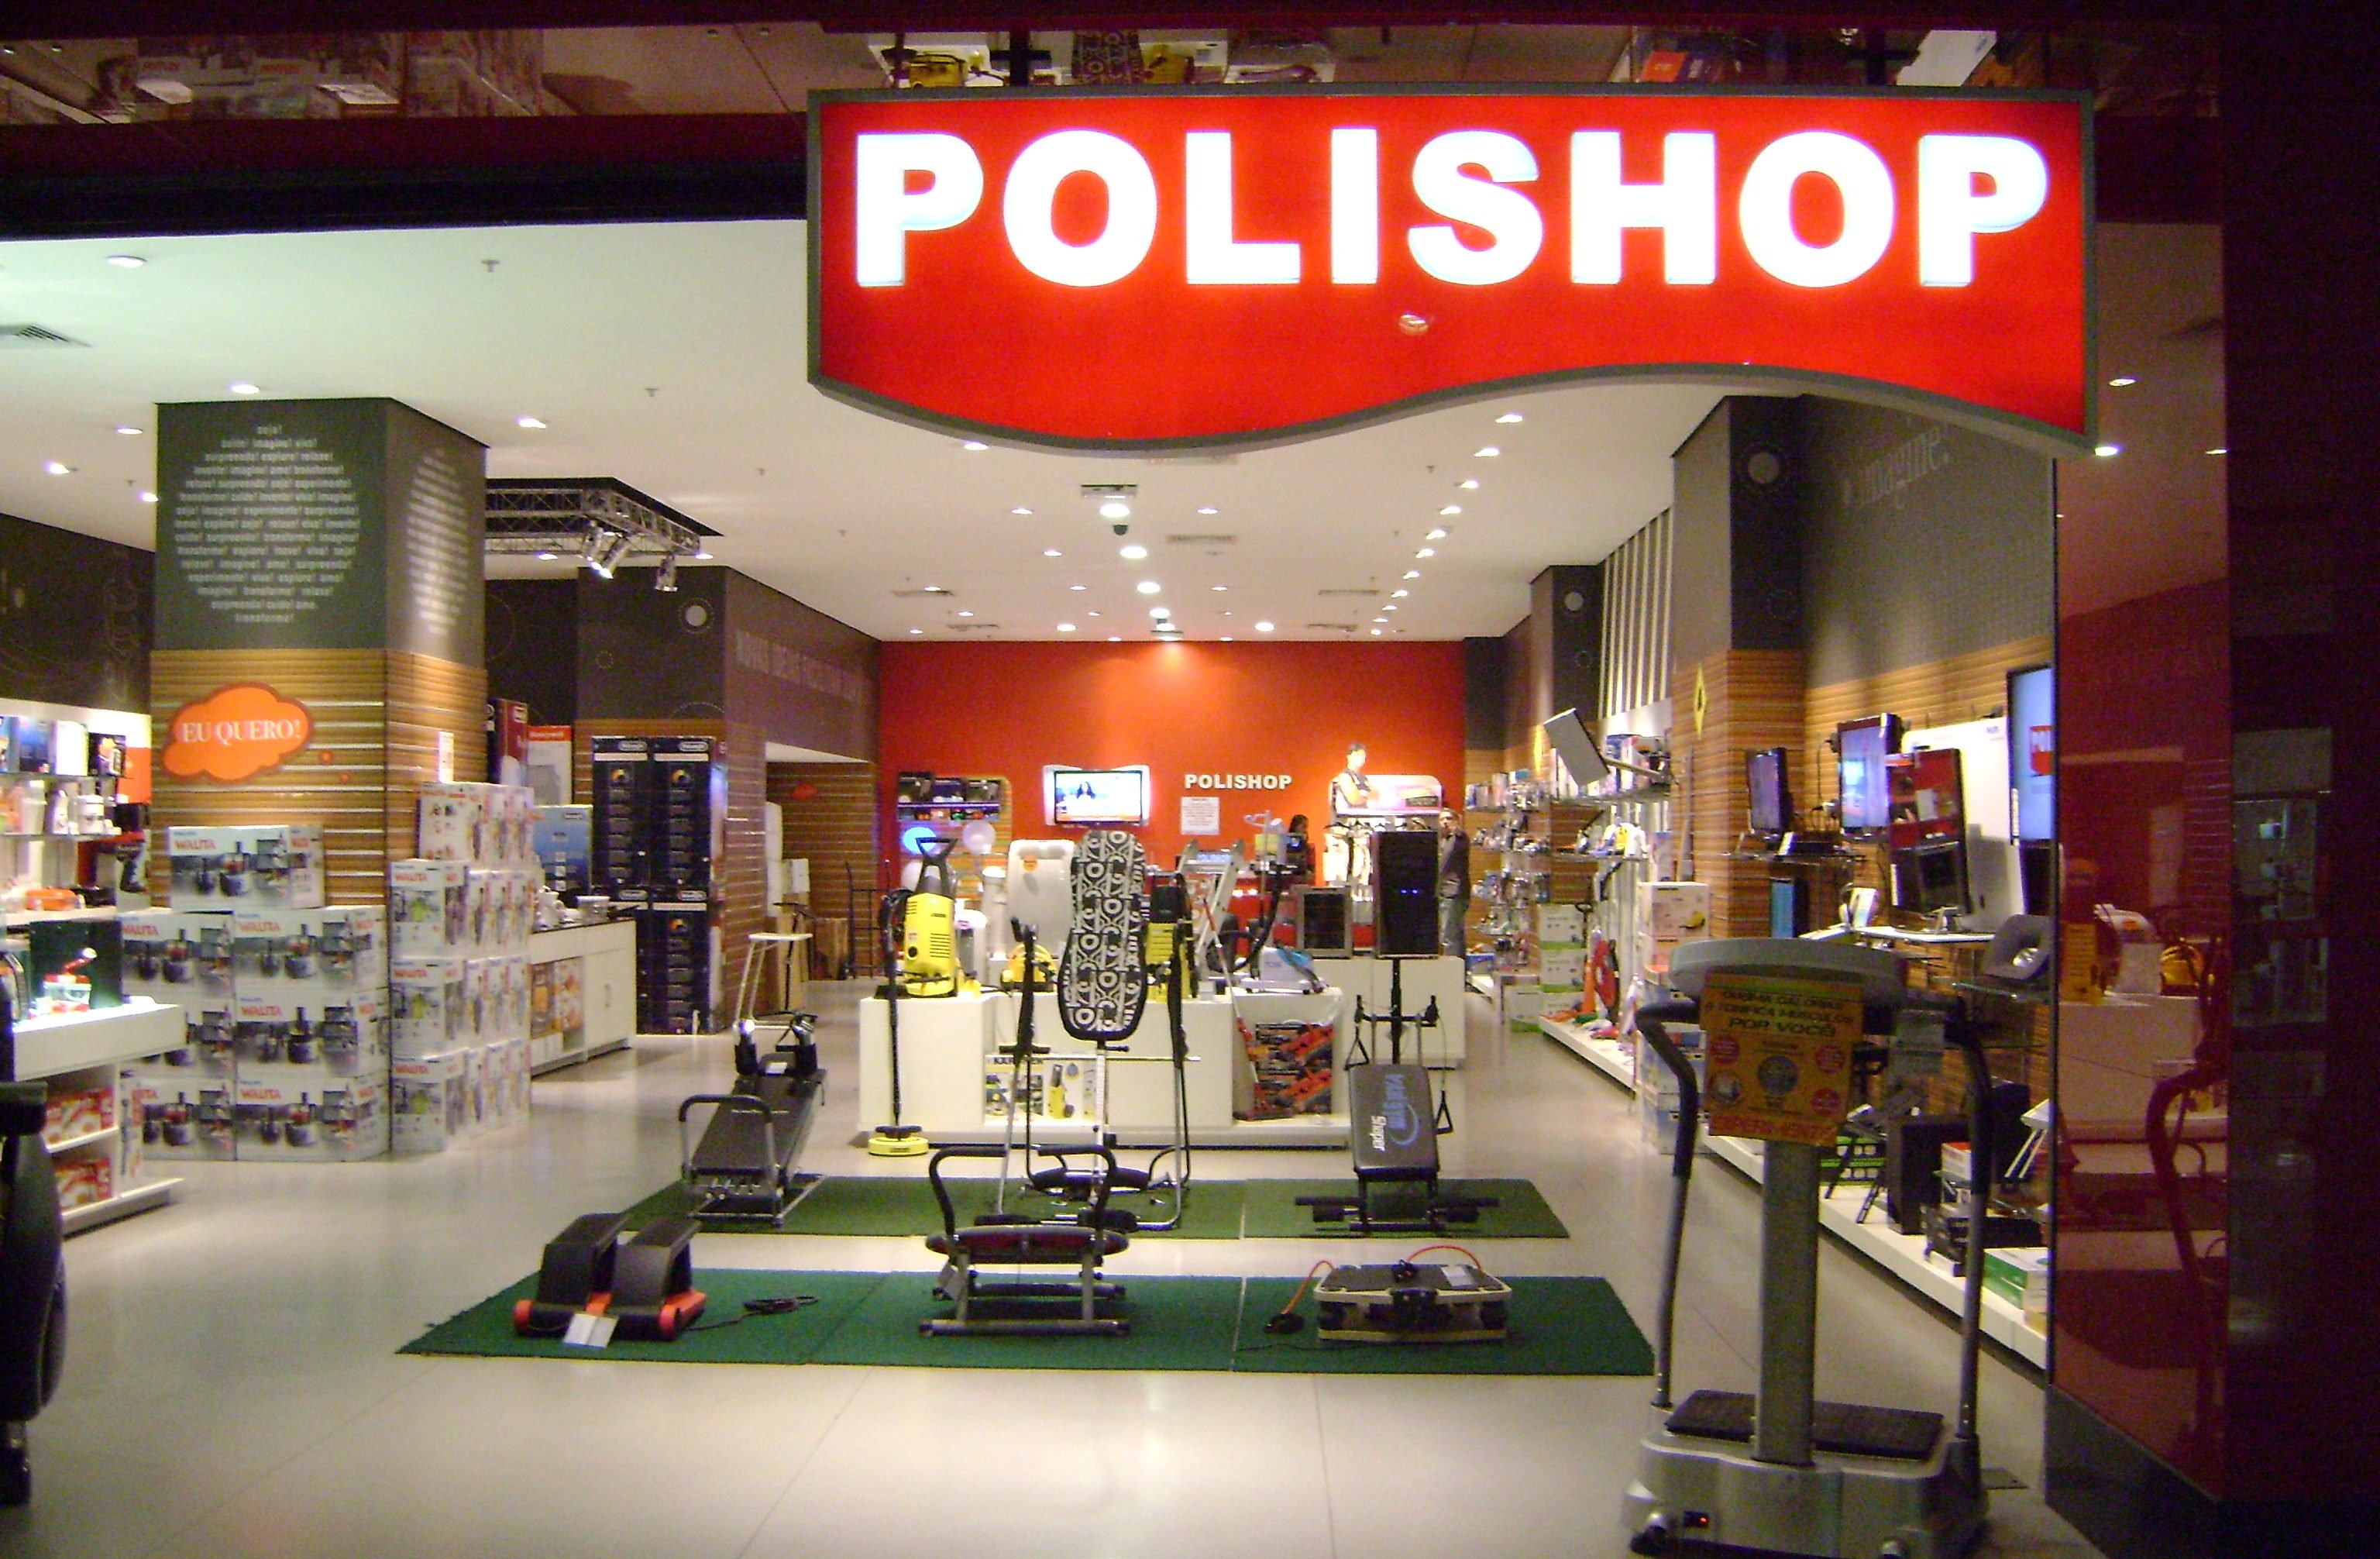 Polishop: a varejista conta com mais de 3 mil funcionários, mais de 280 lojas próprias instaladas nos principais shoppings centers do país